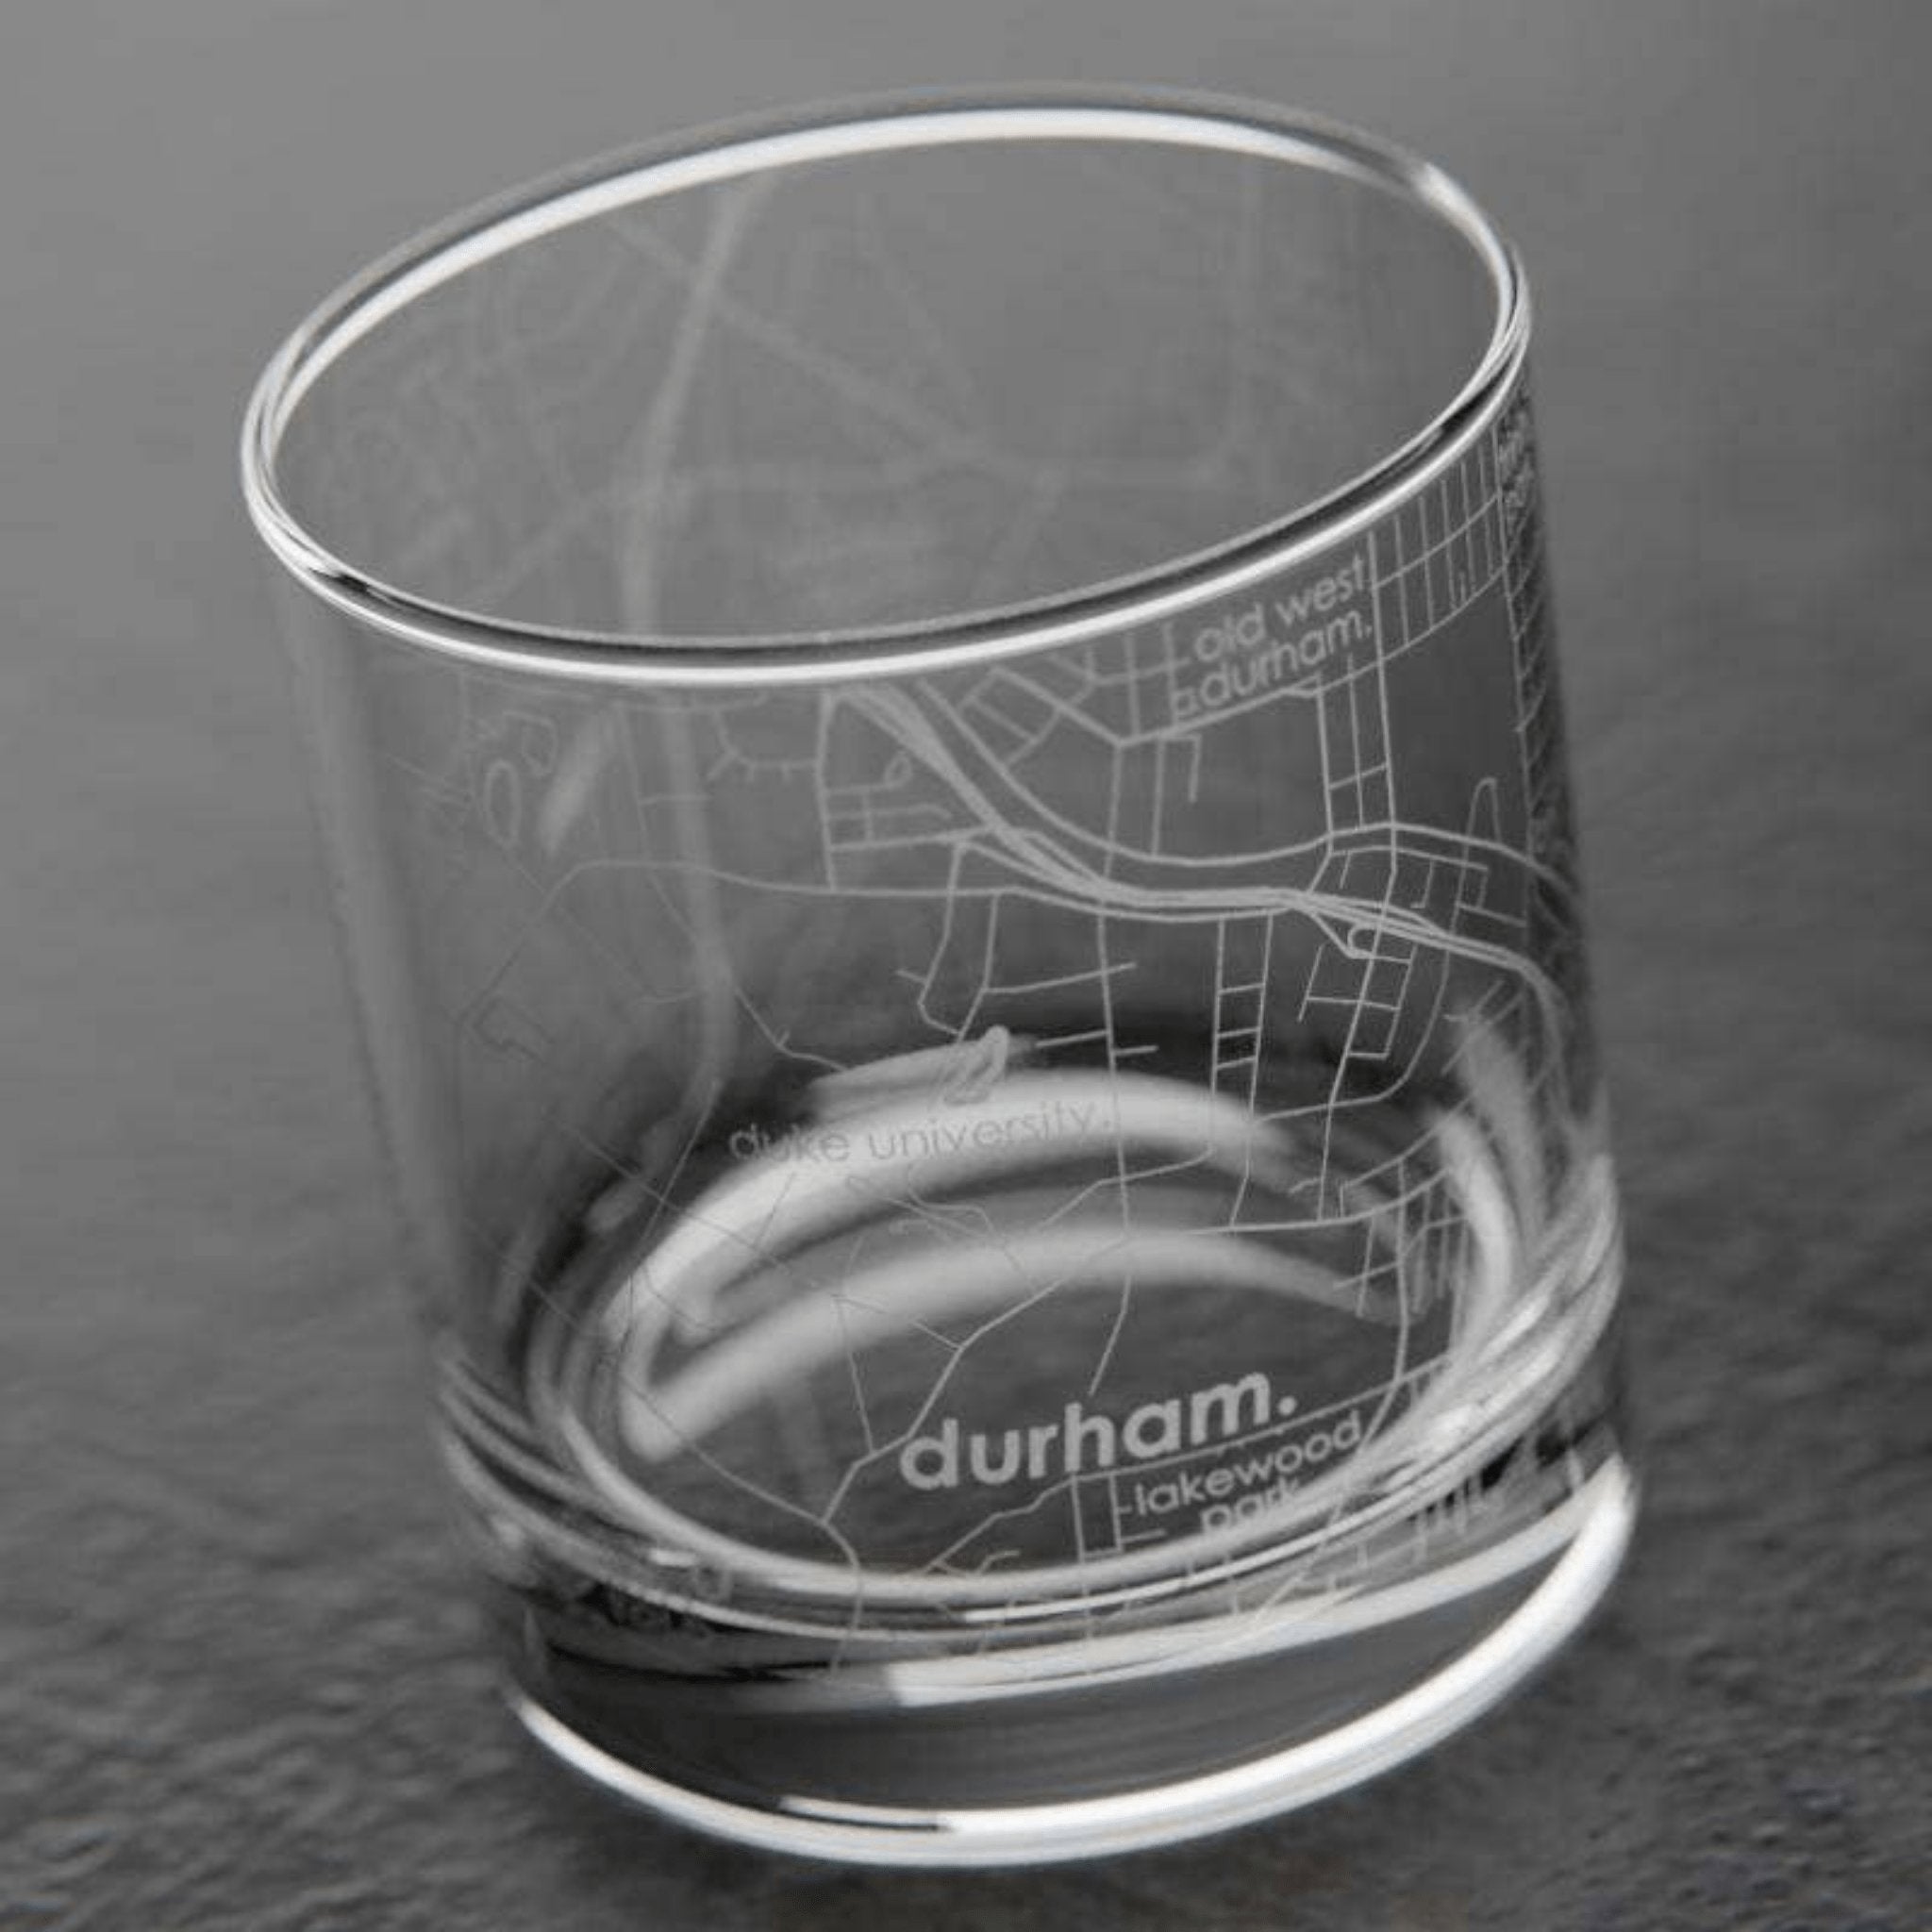 Durham Rocks Old Fashioned Glass - Durham DistilleryCocktail GlasswareShop for Pickup